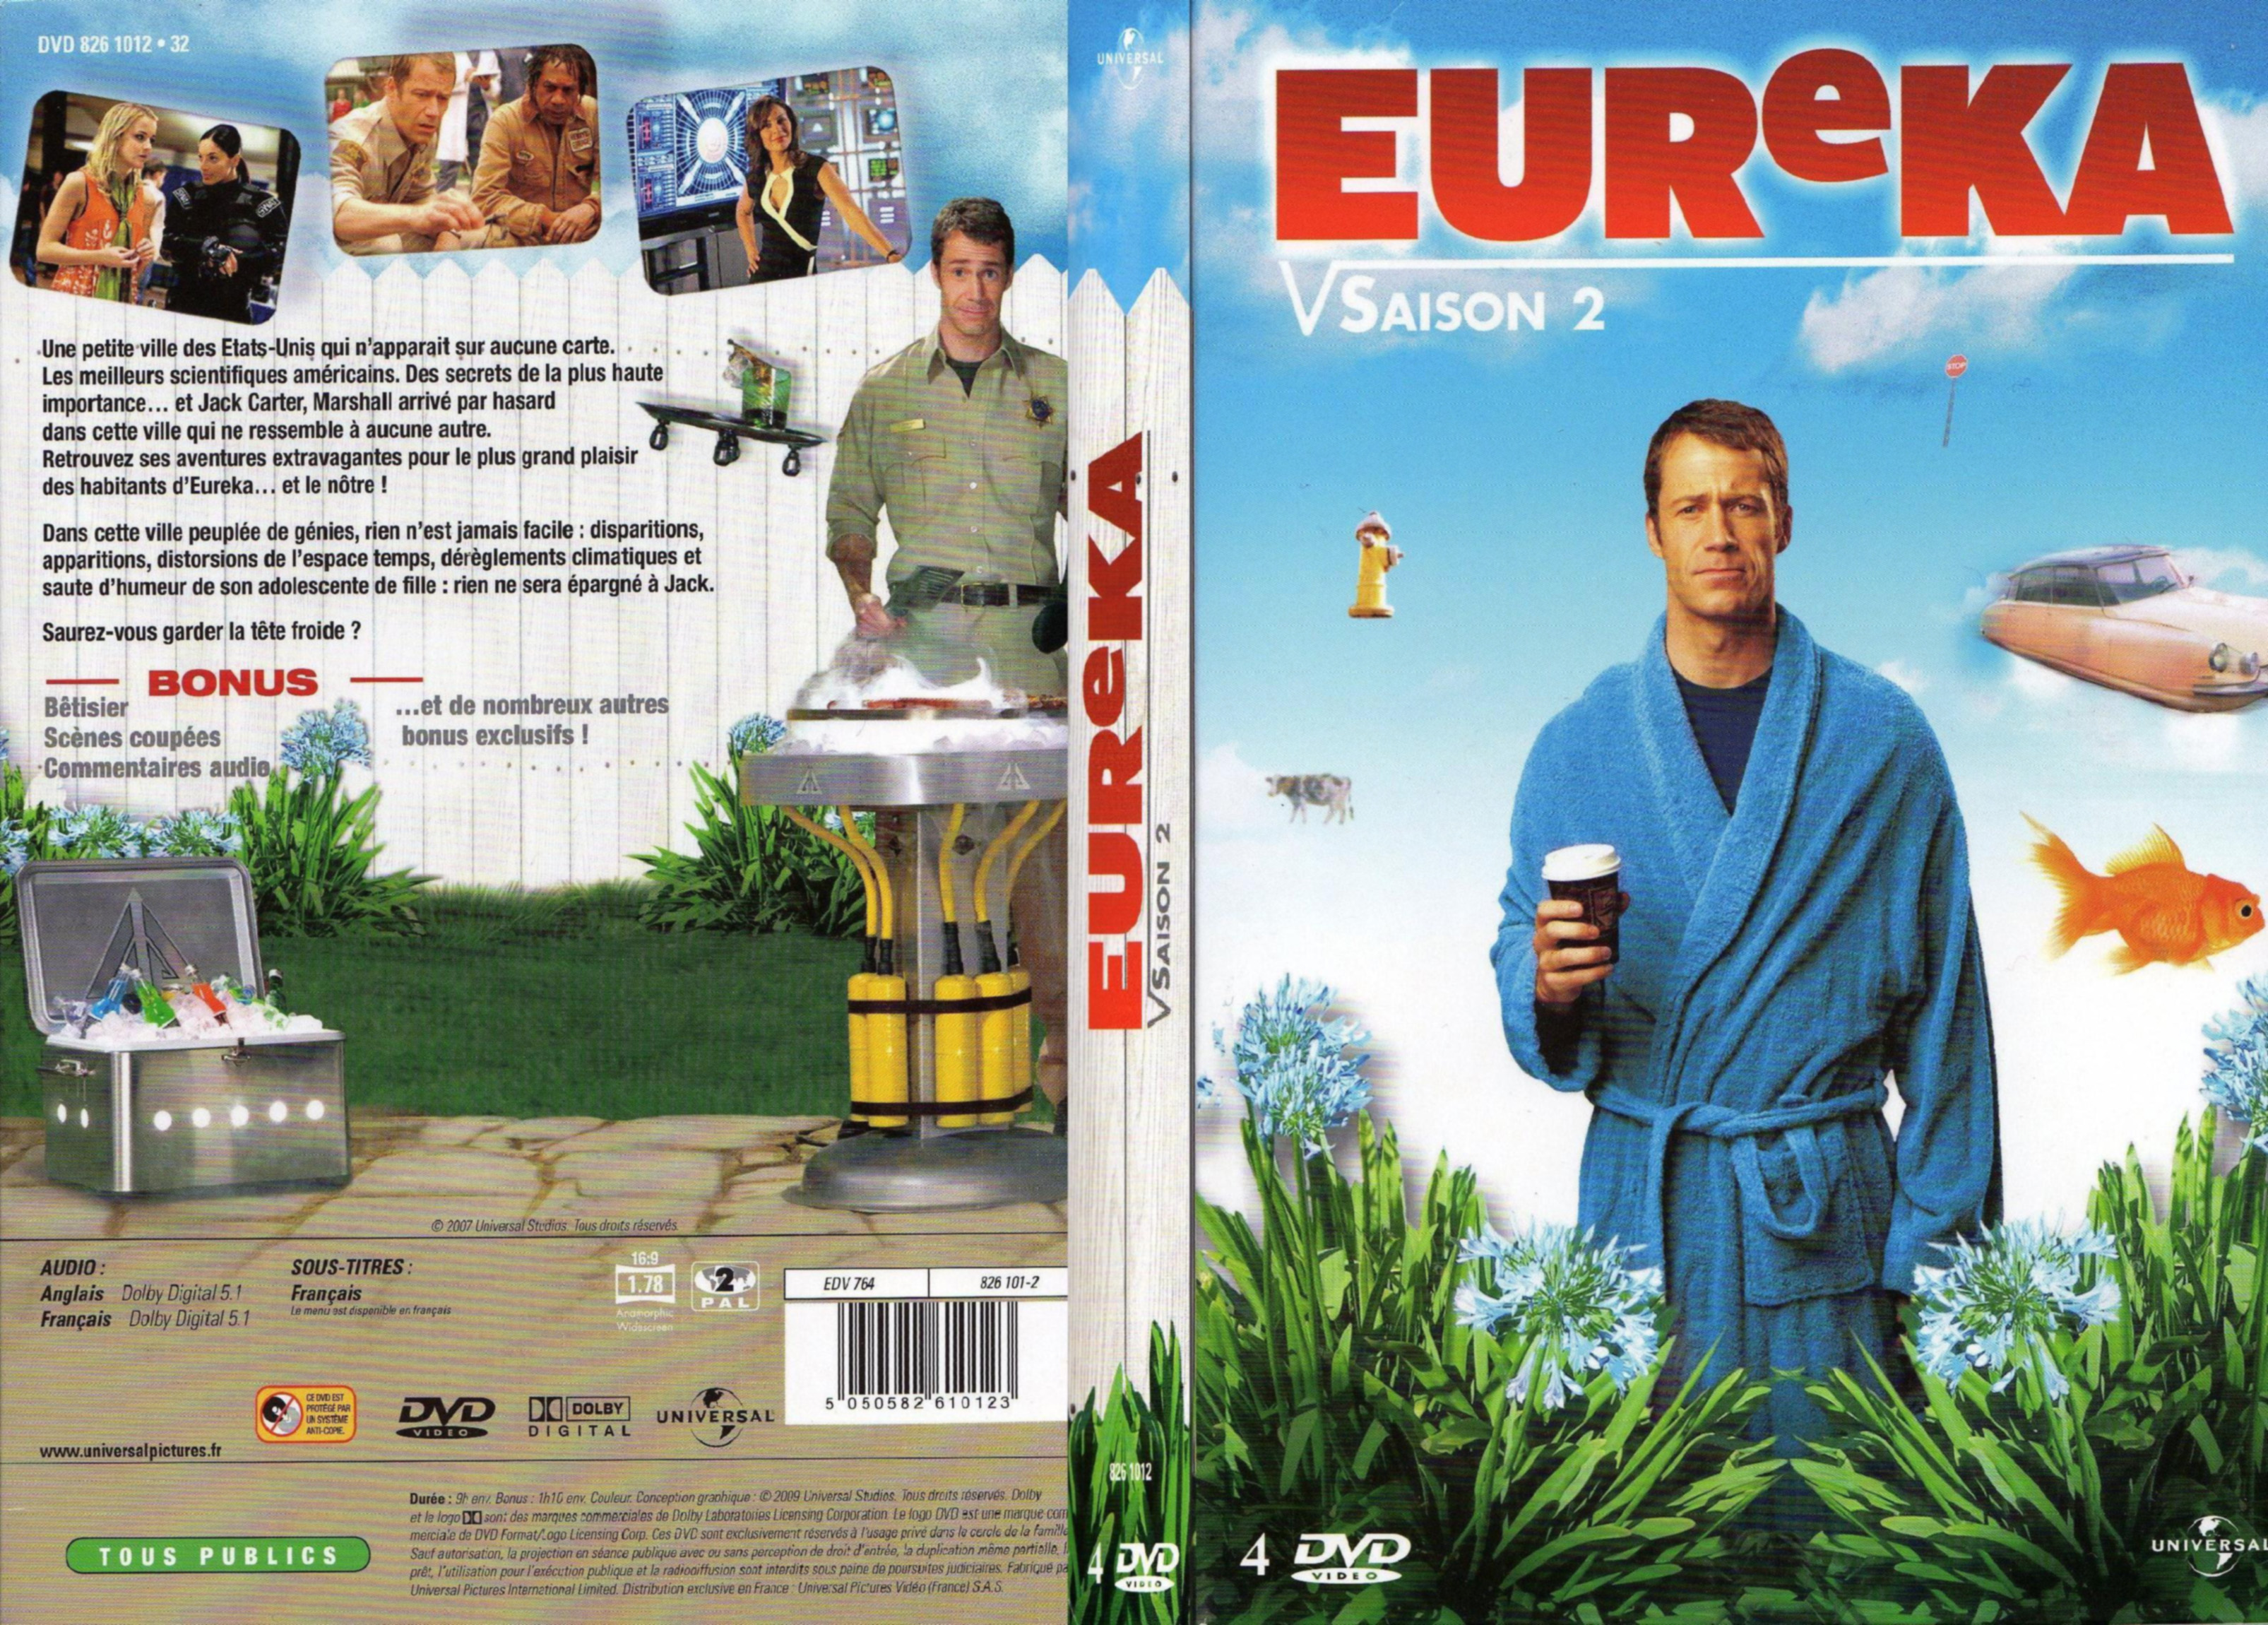 Jaquette DVD Eureka Saison 2